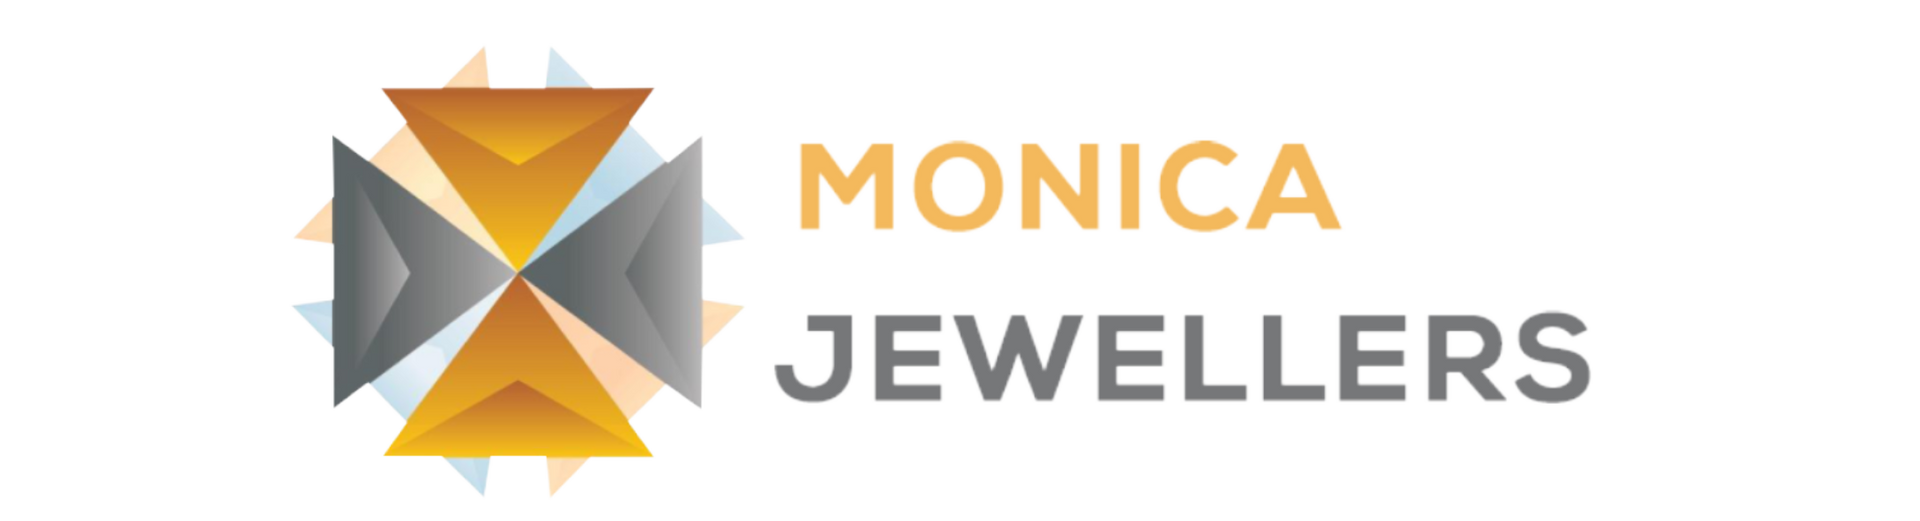 Monica jewellers